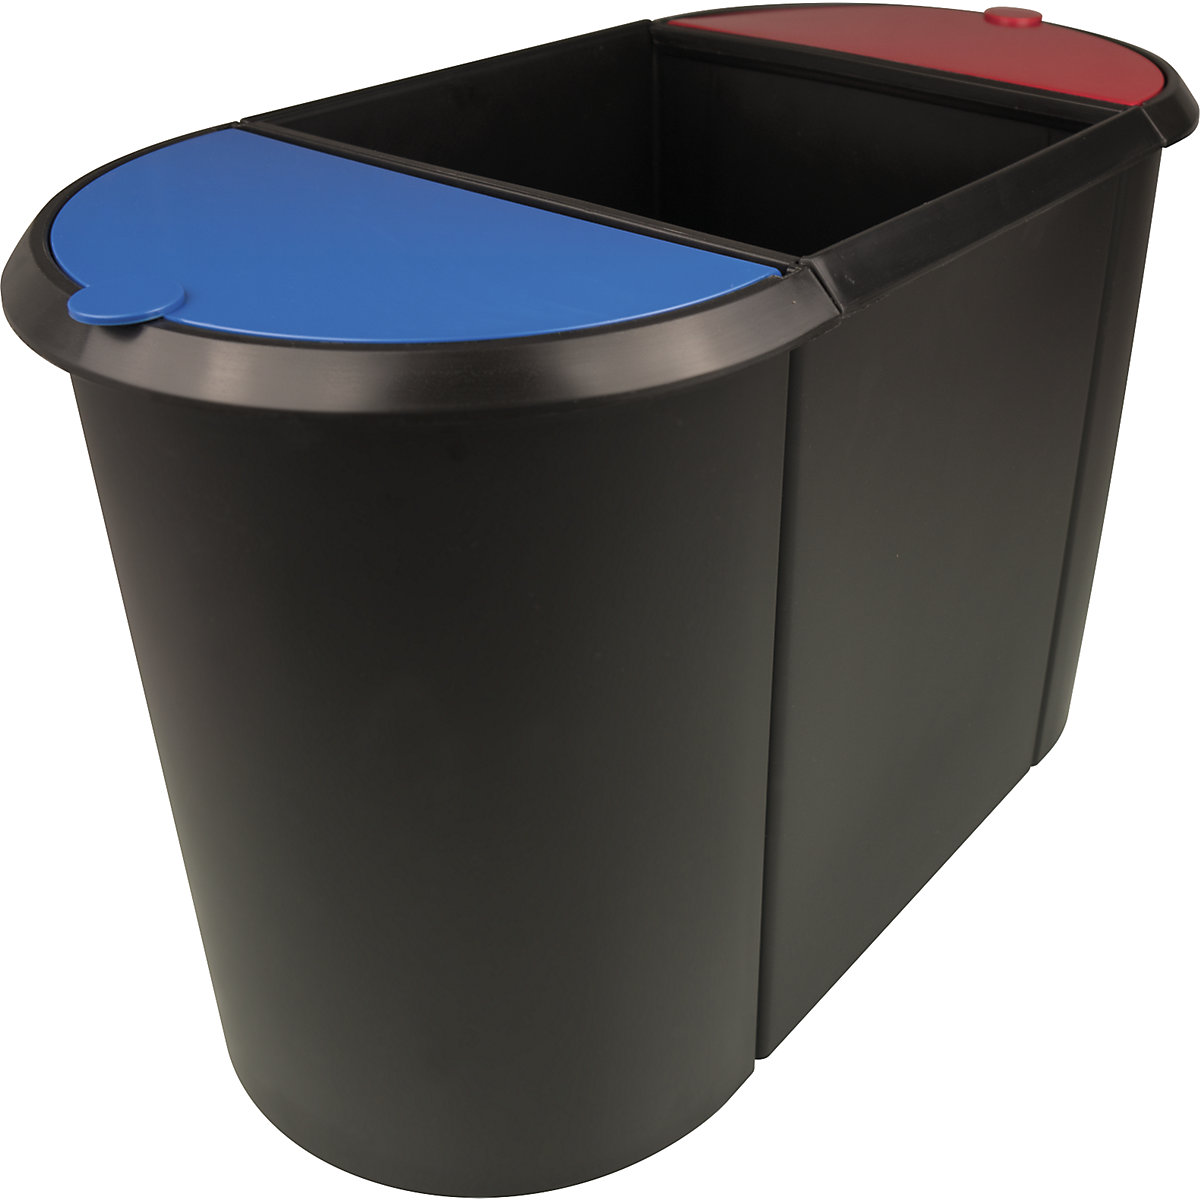 helit – Waste bin system